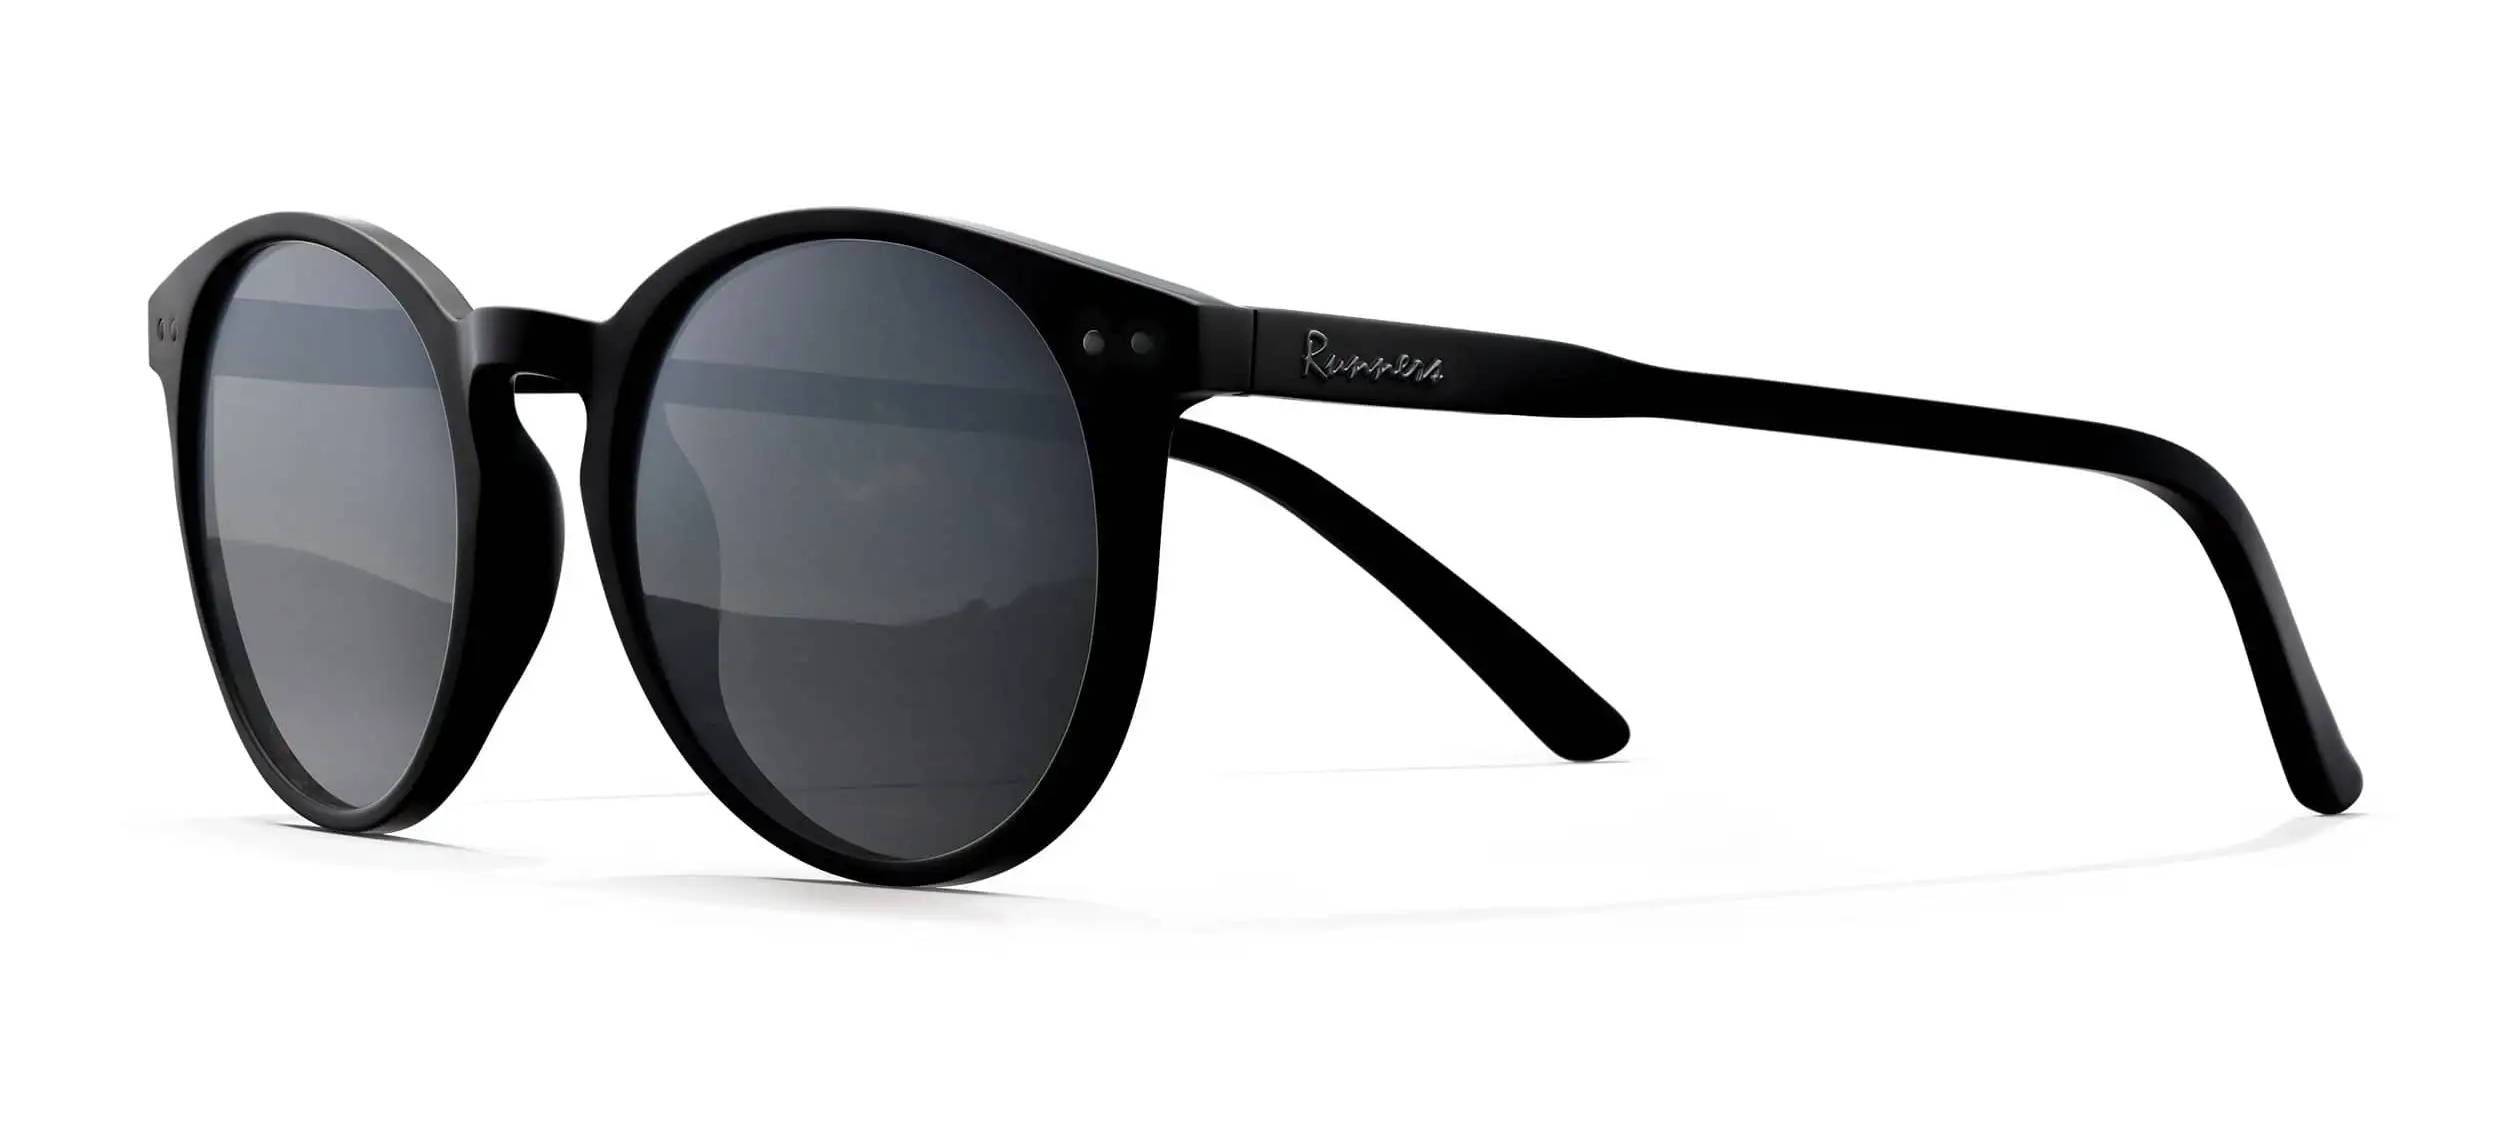 Black women's sunglasses with black lenses